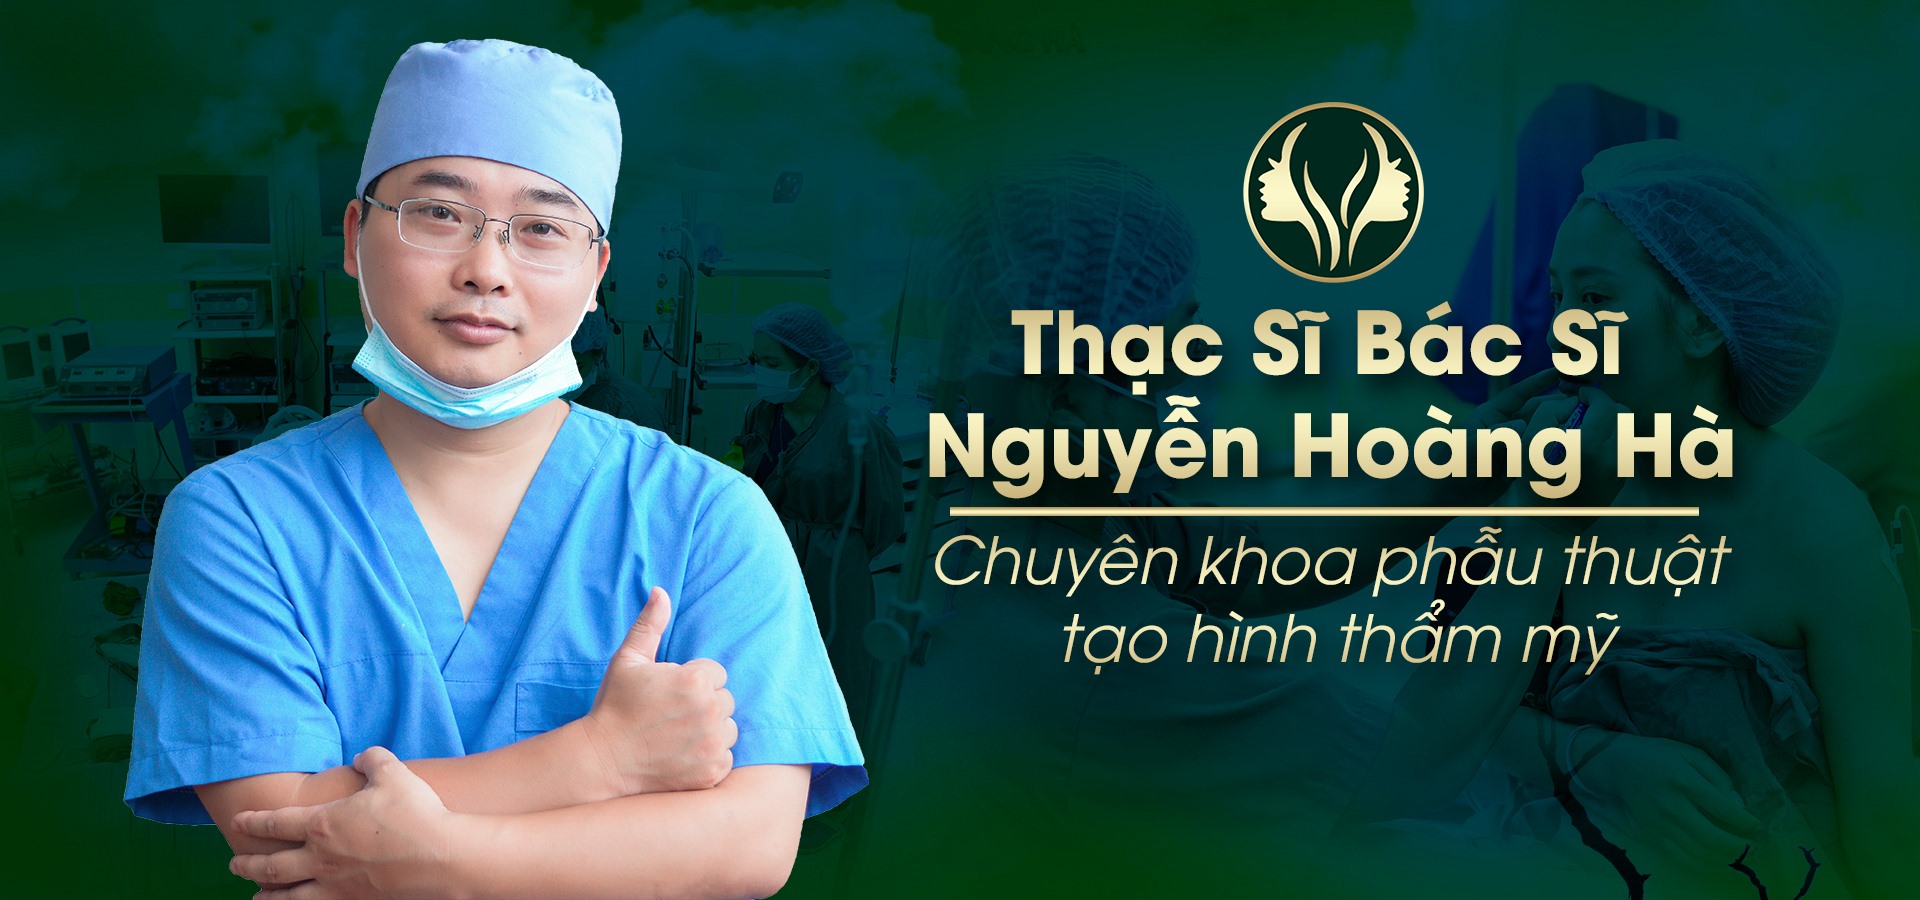 100% ca phẫu thuật do Th.S Bác sĩ Nguyễn Hoàng Hà thực hiện 